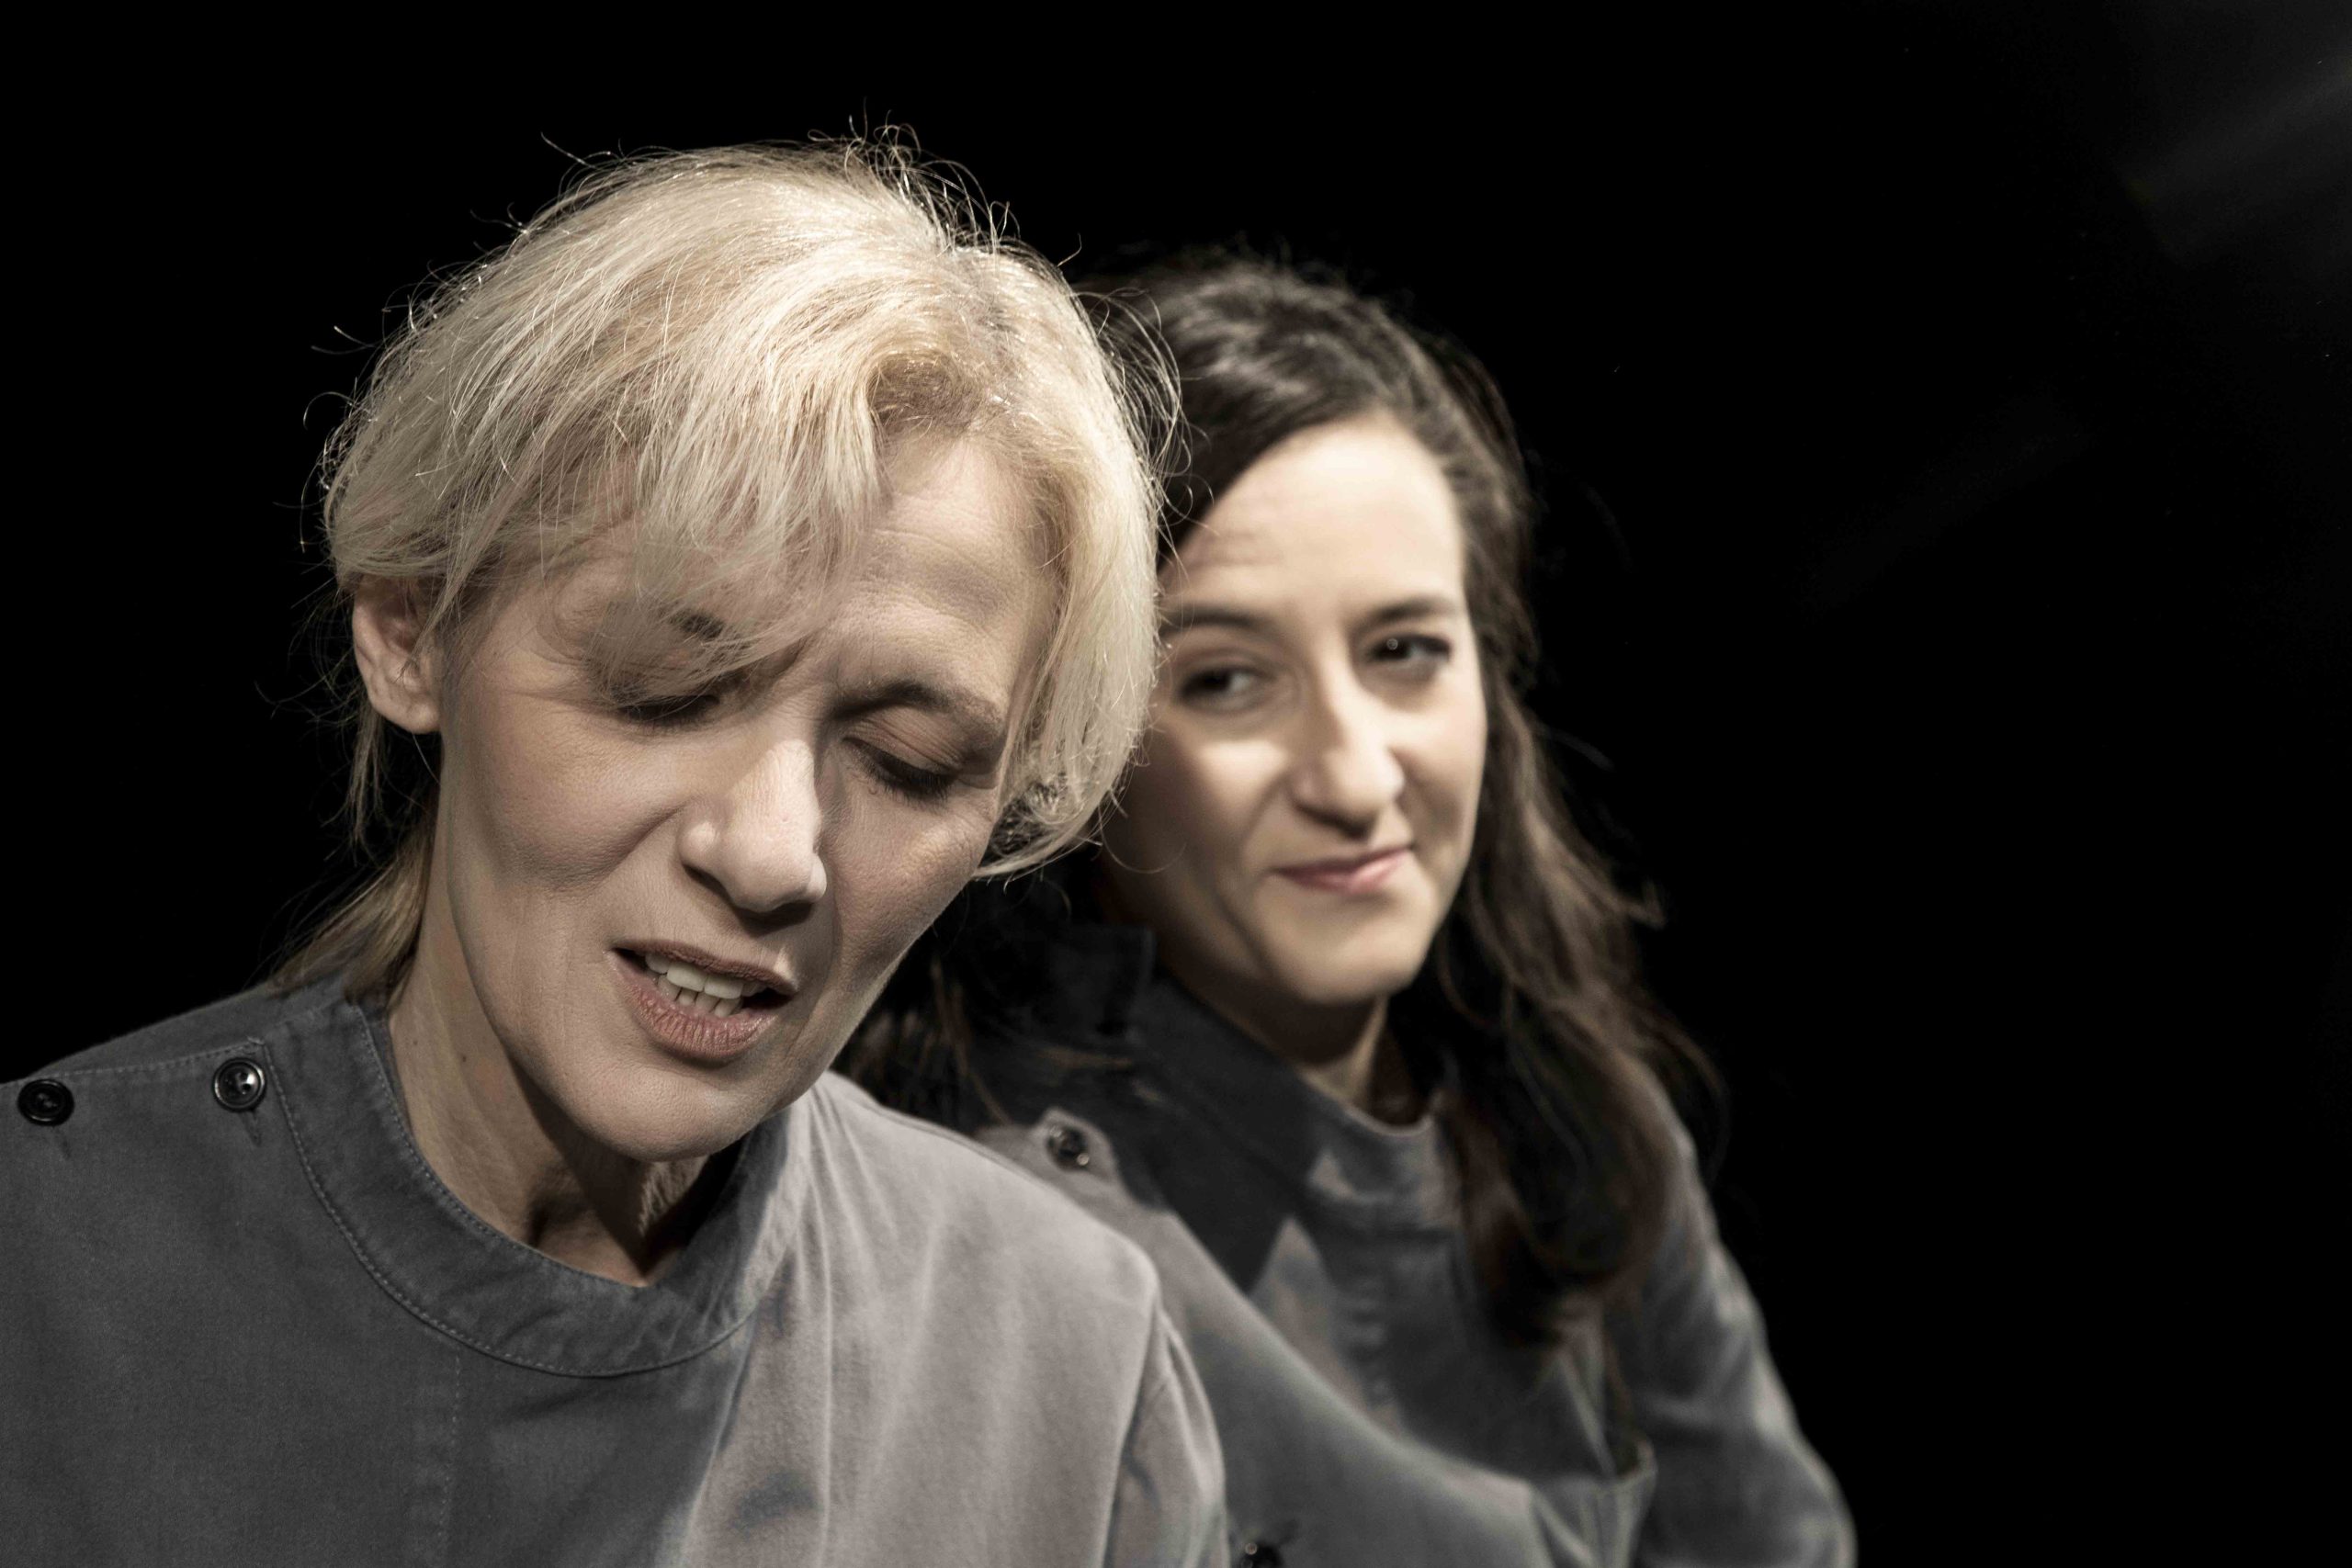 Matilde e il tram per San Vittore: al Teatro della Cooperativa uno spettacolo sulle donne nella Resistenza